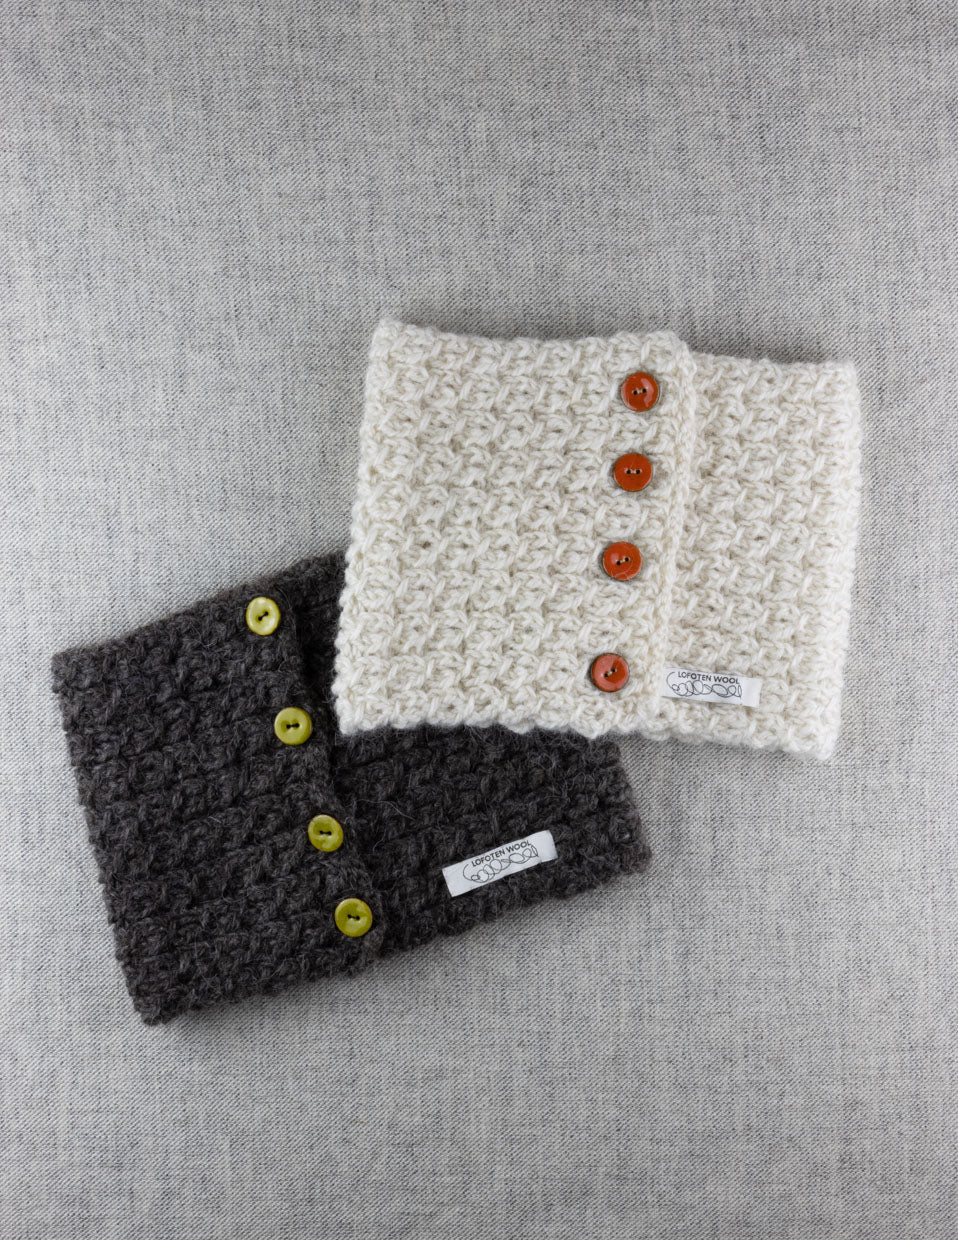 Tauverk neck warmer, knitting kit